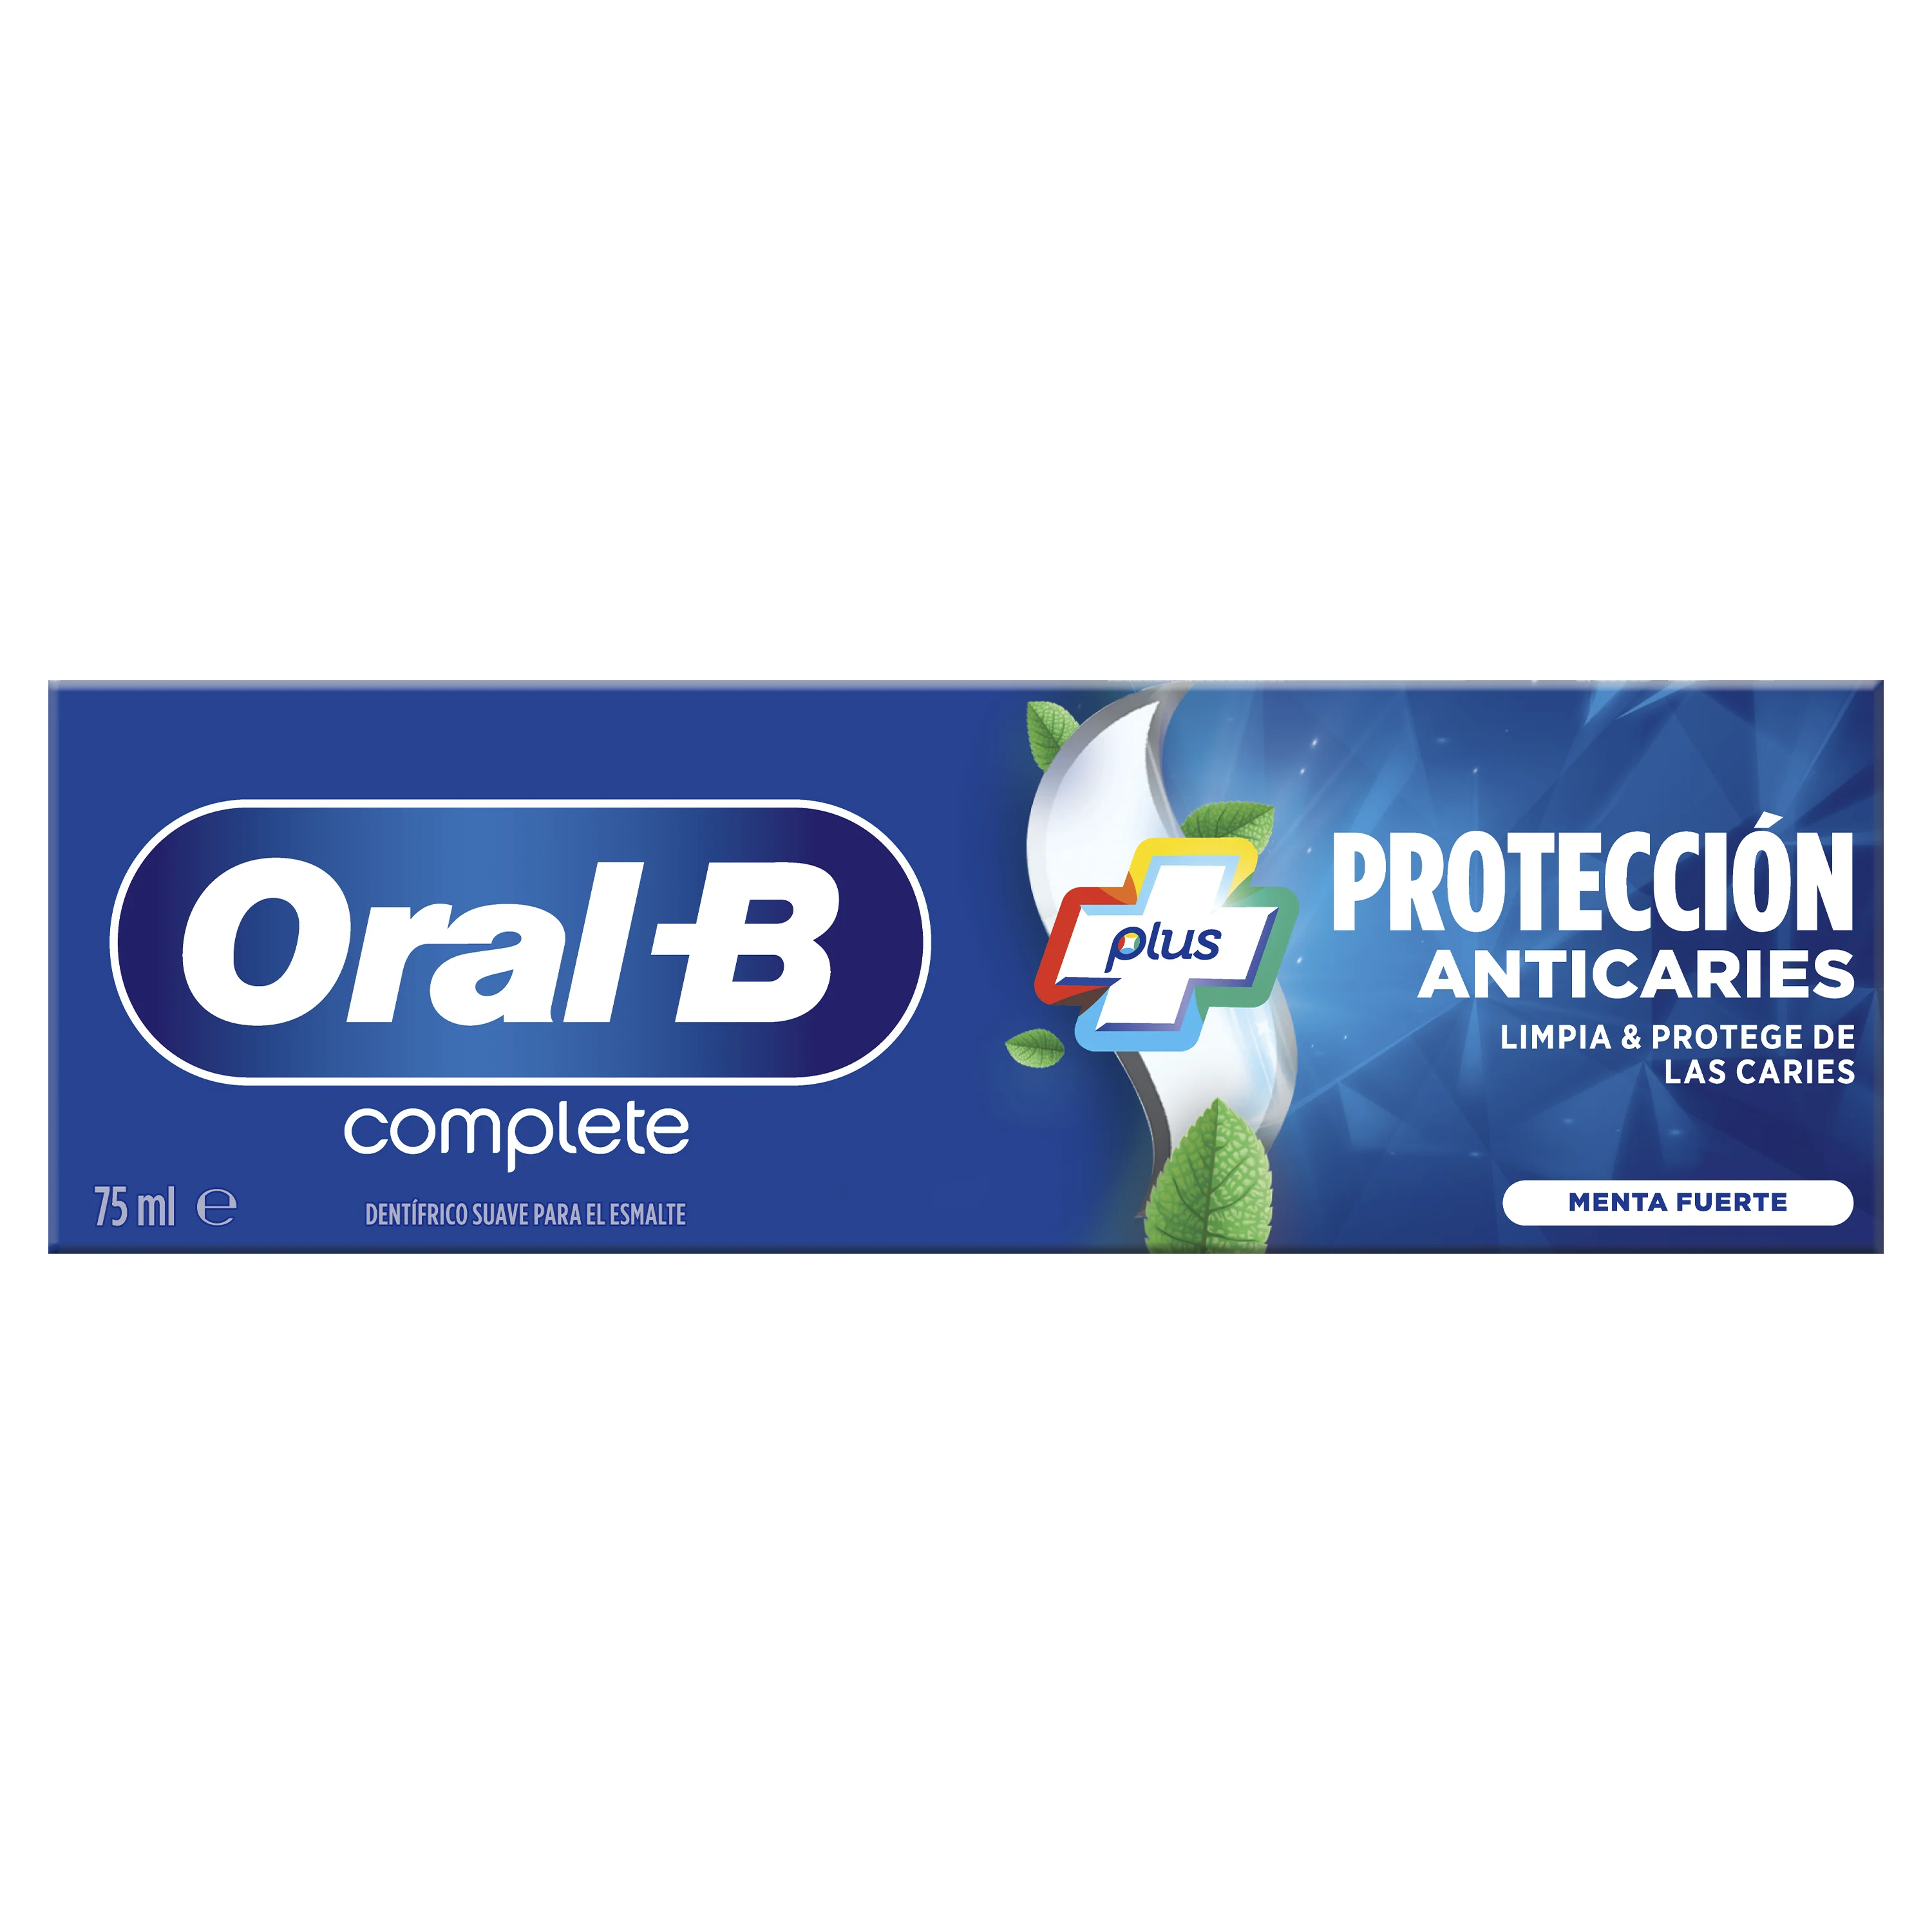 Oral-B Complete Plus Protección Anticaries - 1 undefined